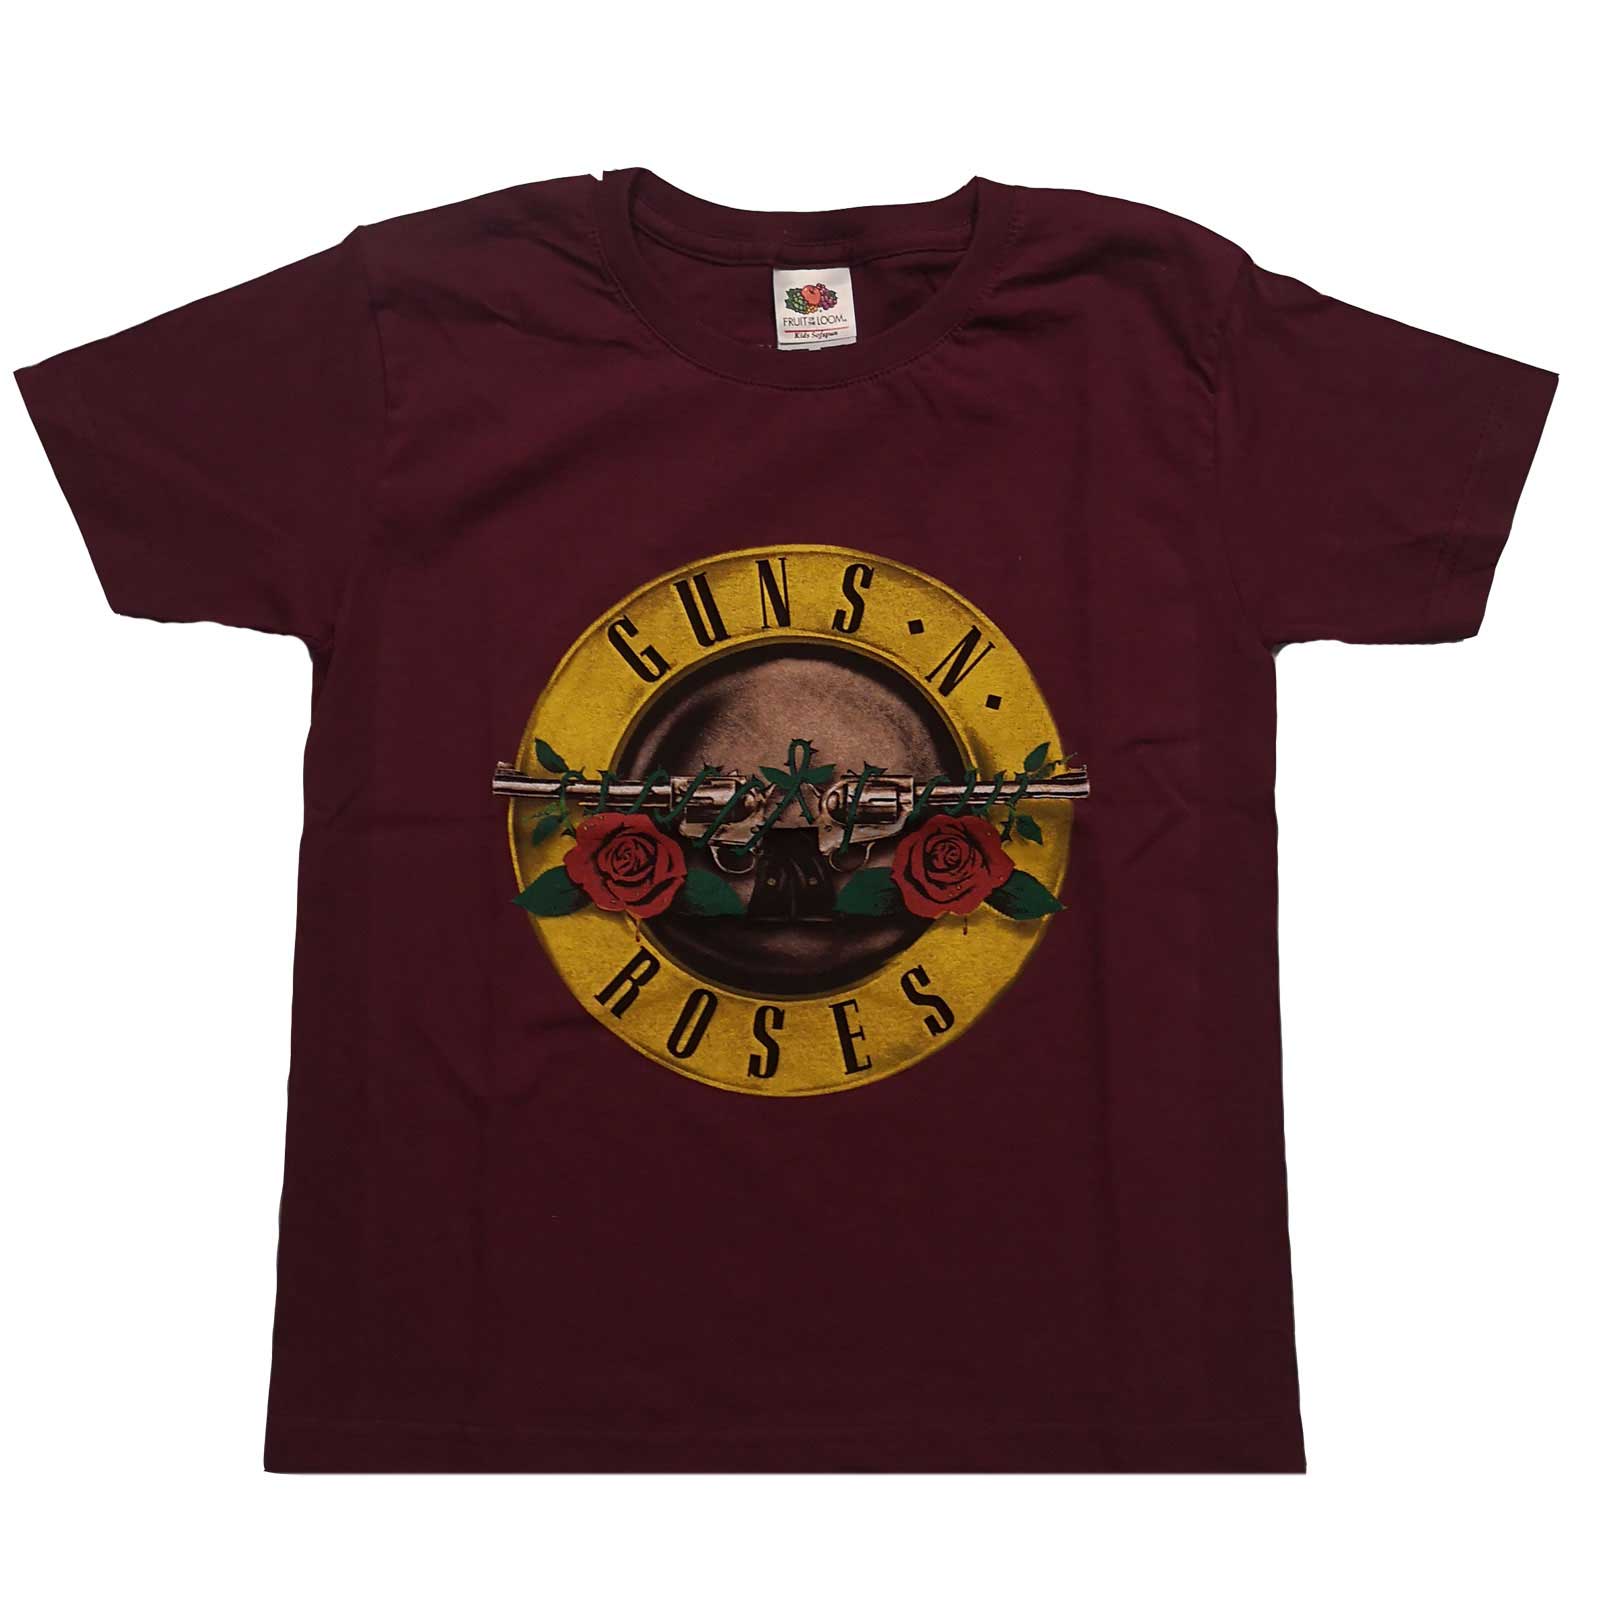 Tee shirt Guns N’ Roses marron